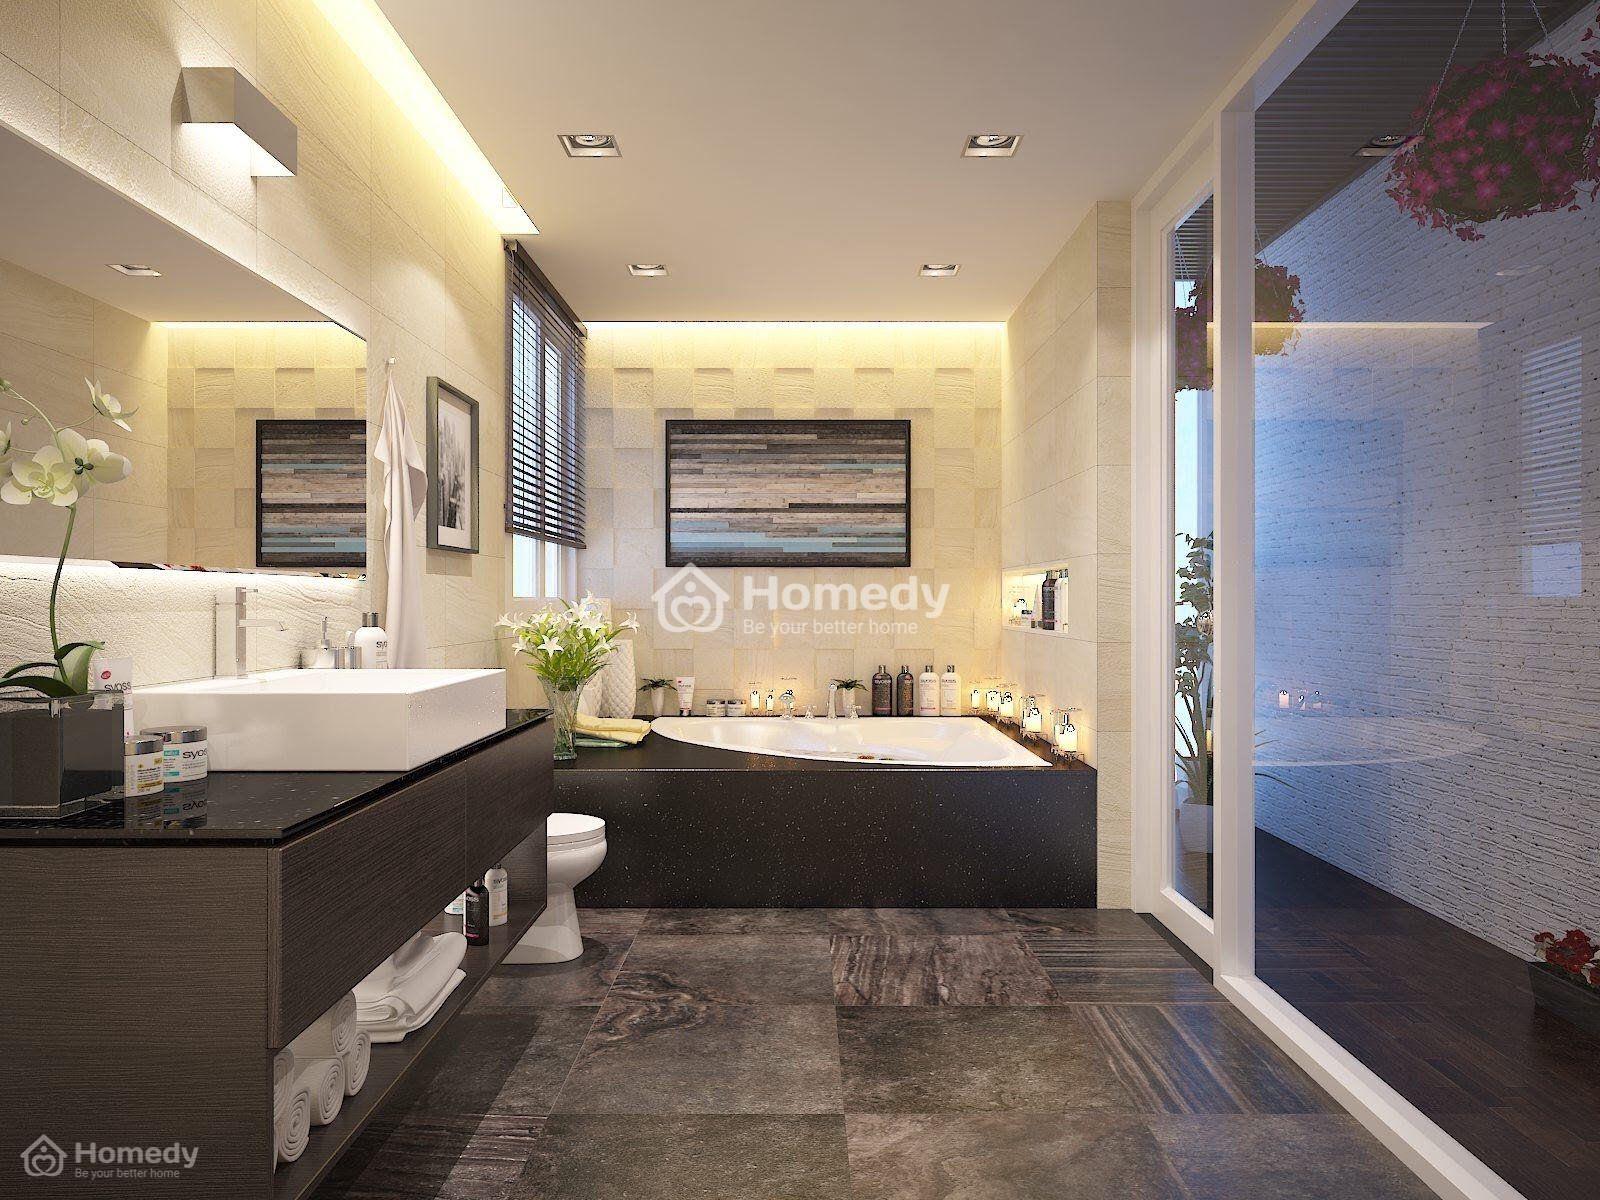 Với chi phí vừa phải, bạn có thể sở hữu một phòng tắm 6m2 hiện đại và tiện nghi. Thiết kế thông minh sẽ giúp tiết kiệm không gian và tối ưu hóa mọi chức năng. Hãy để chúng tôi giúp bạn tạo nên một không gian tắm tuyệt vời trong ngôi nhà của mình.